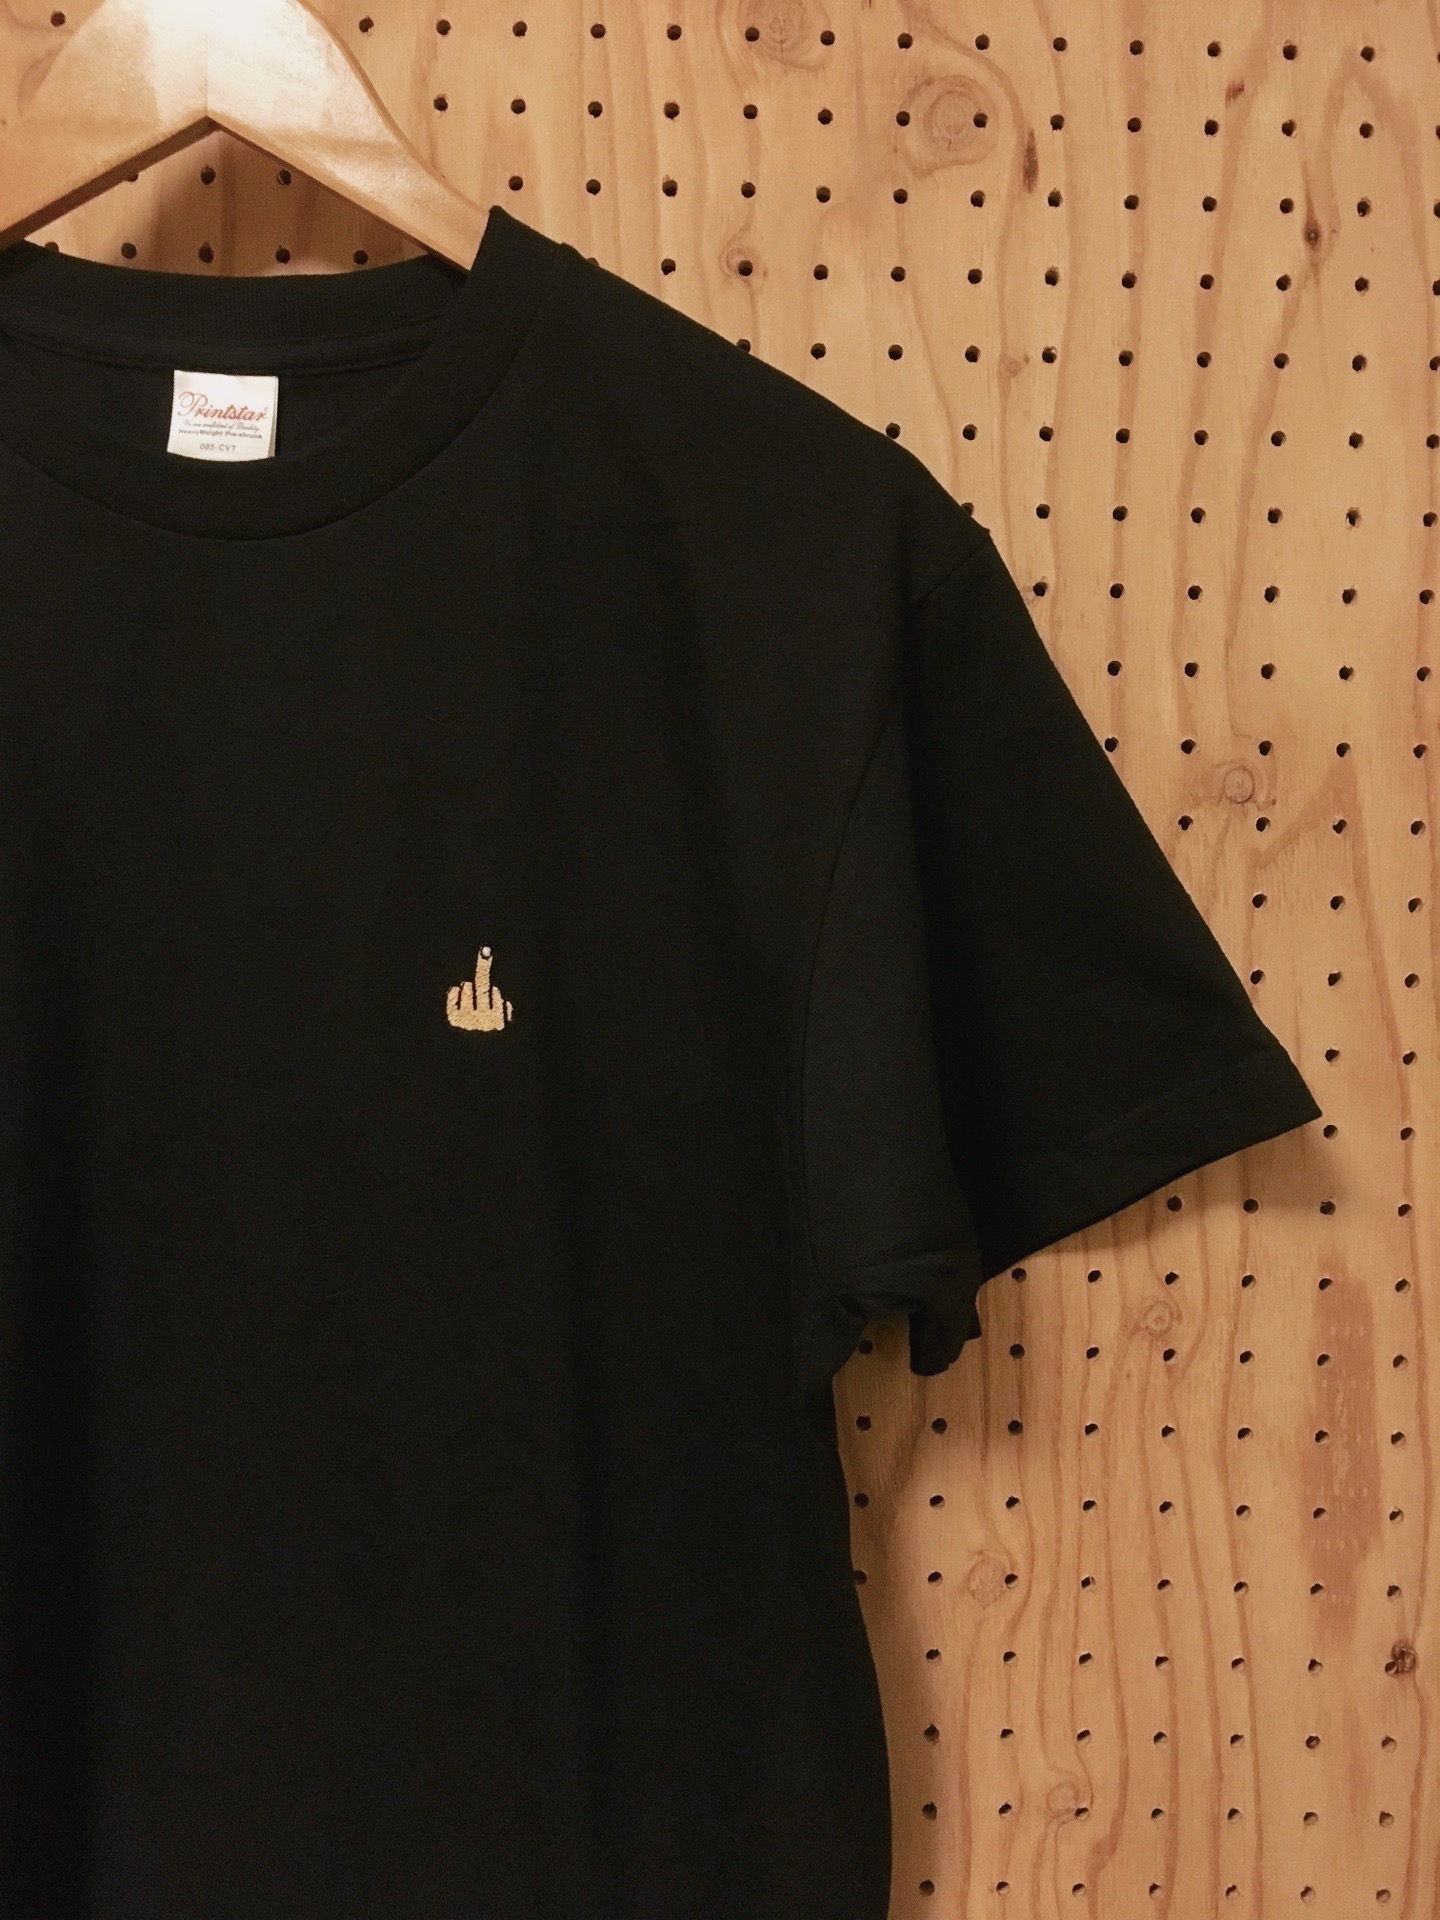 中指ワンポイント刺繍tシャツ Iichi ハンドメイド クラフト作品 手仕事品の通販